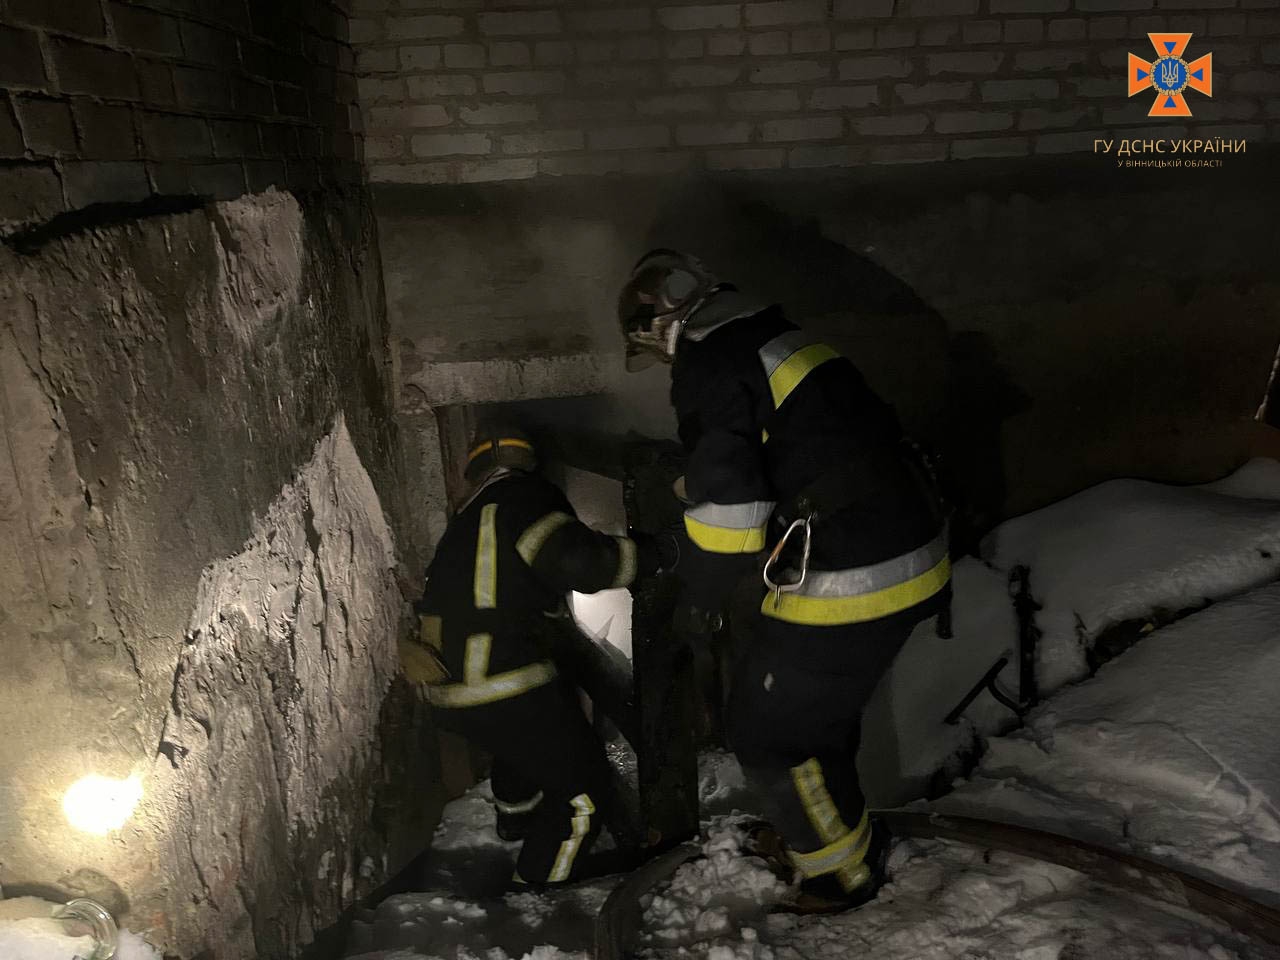 У Вінниці та Хмільницькому районі сталися пожежі - горіли приватні будинки